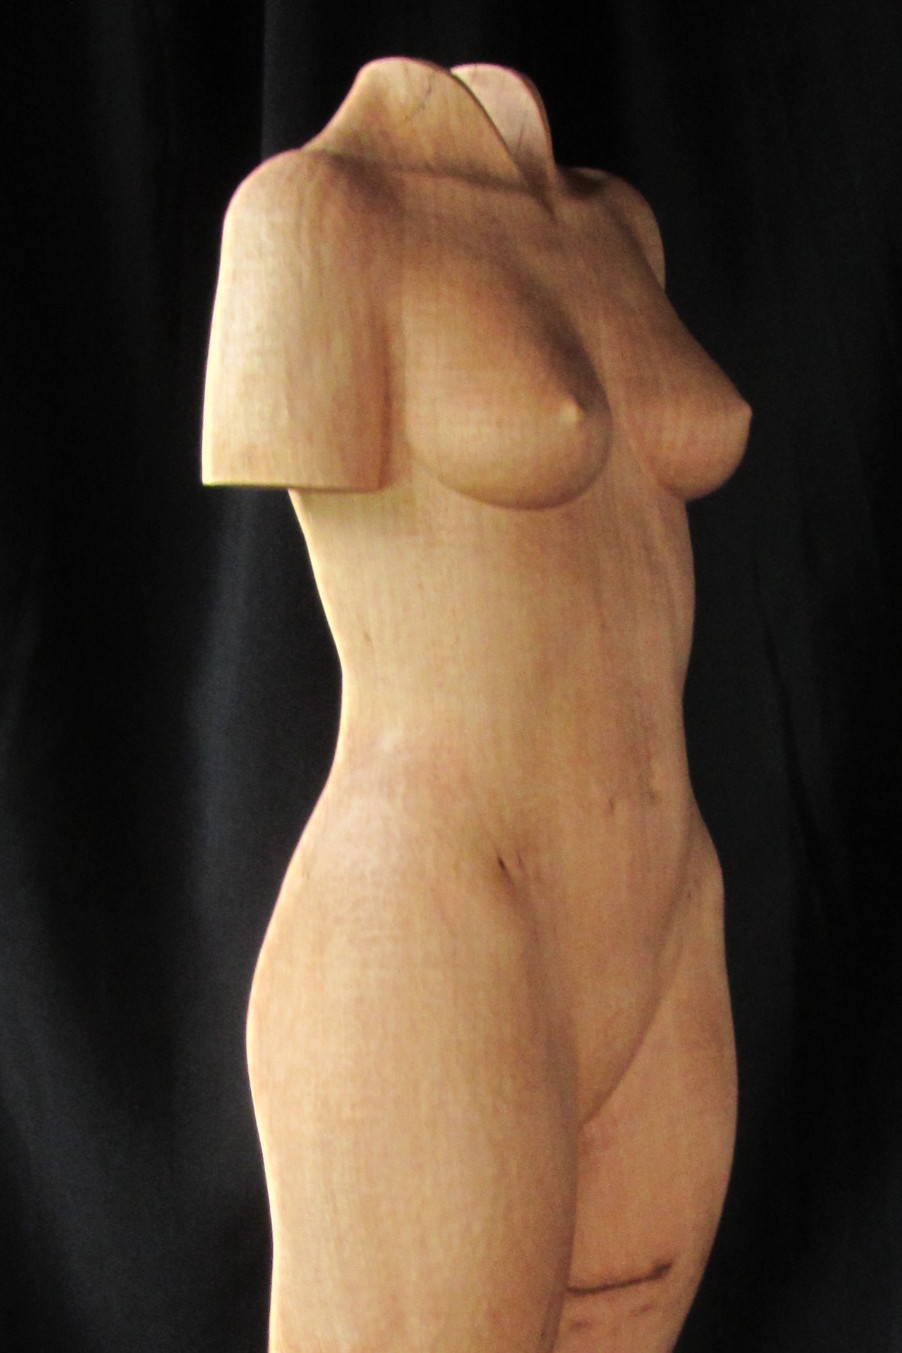 Standing Nude #2 Vrouwelijke tors front-side detail